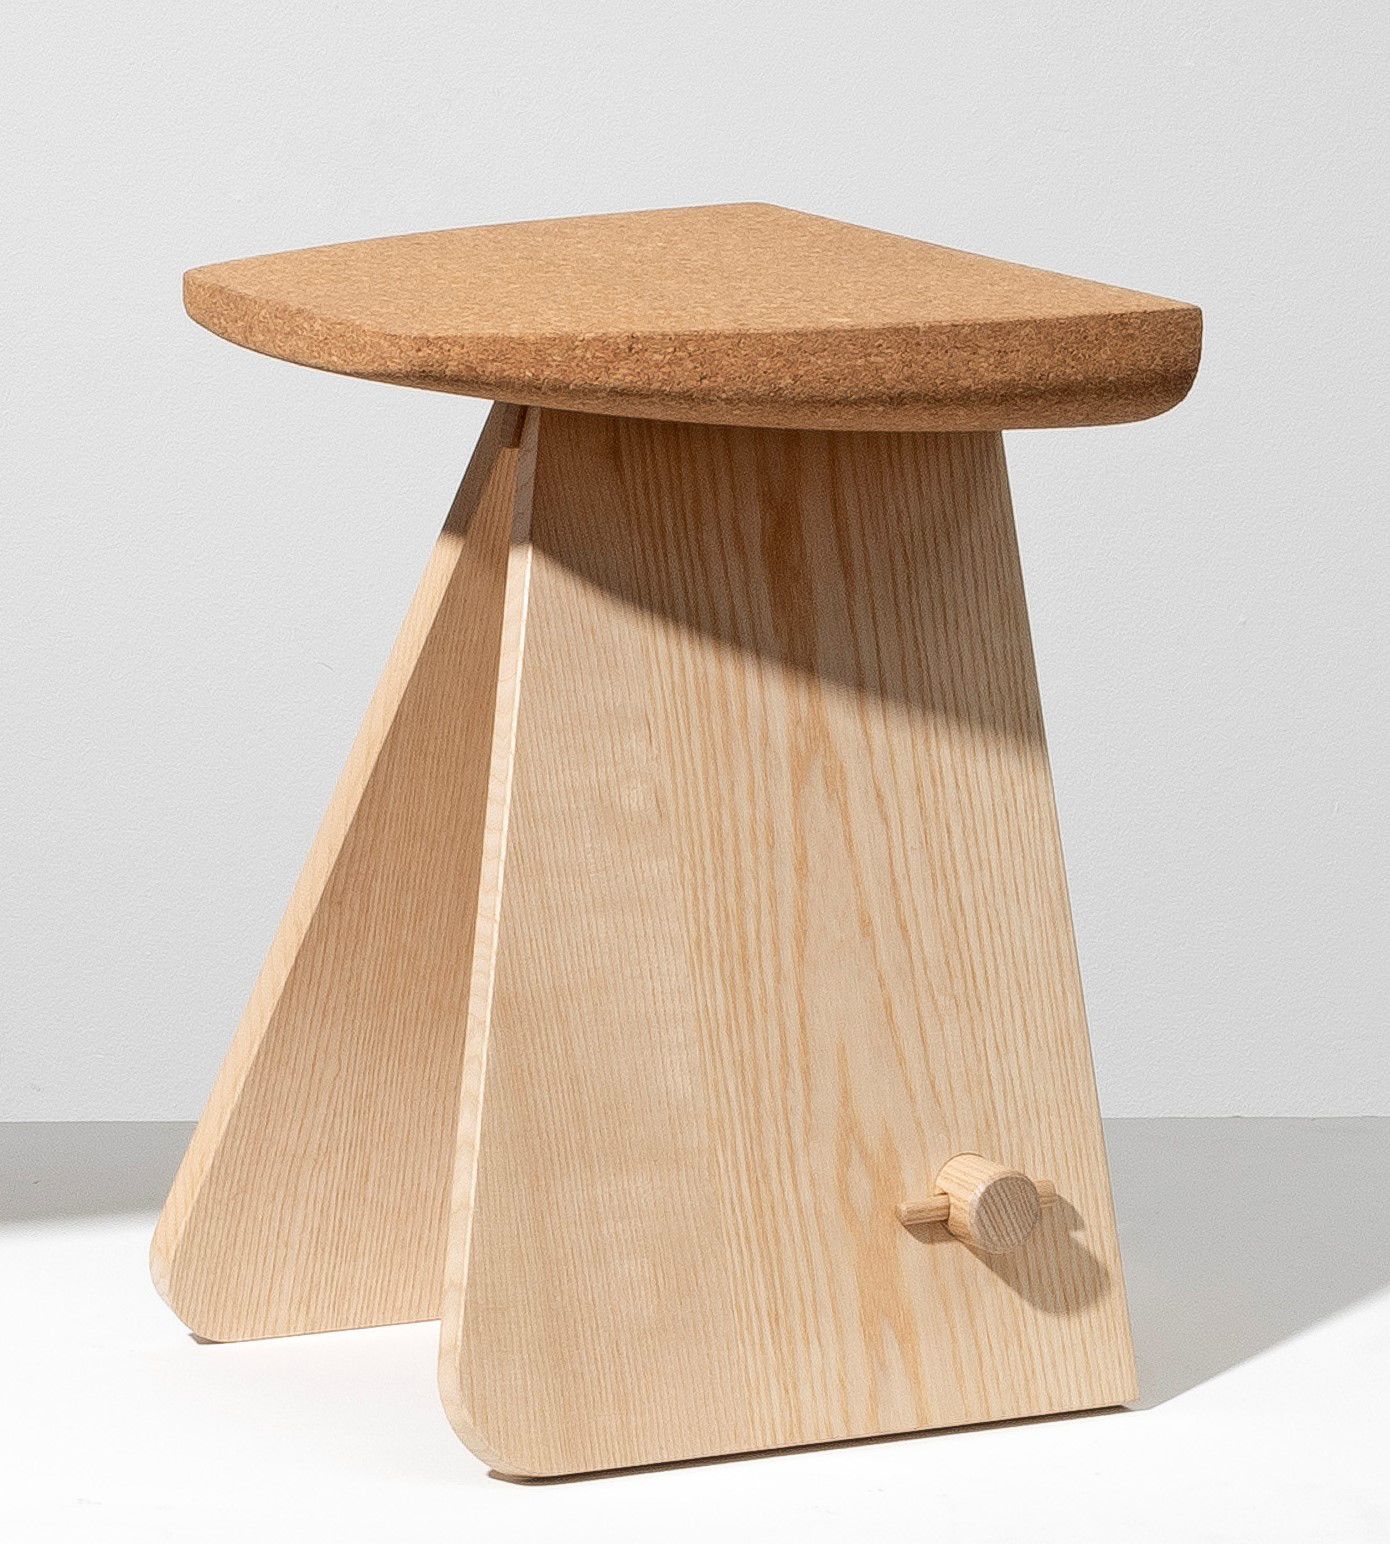 NICOLAS VERSCHAEVE Escale 01
凳子 天然软木和白蜡底座。
Kruk
Natuurlijke kurk en essenhouten &hellip;